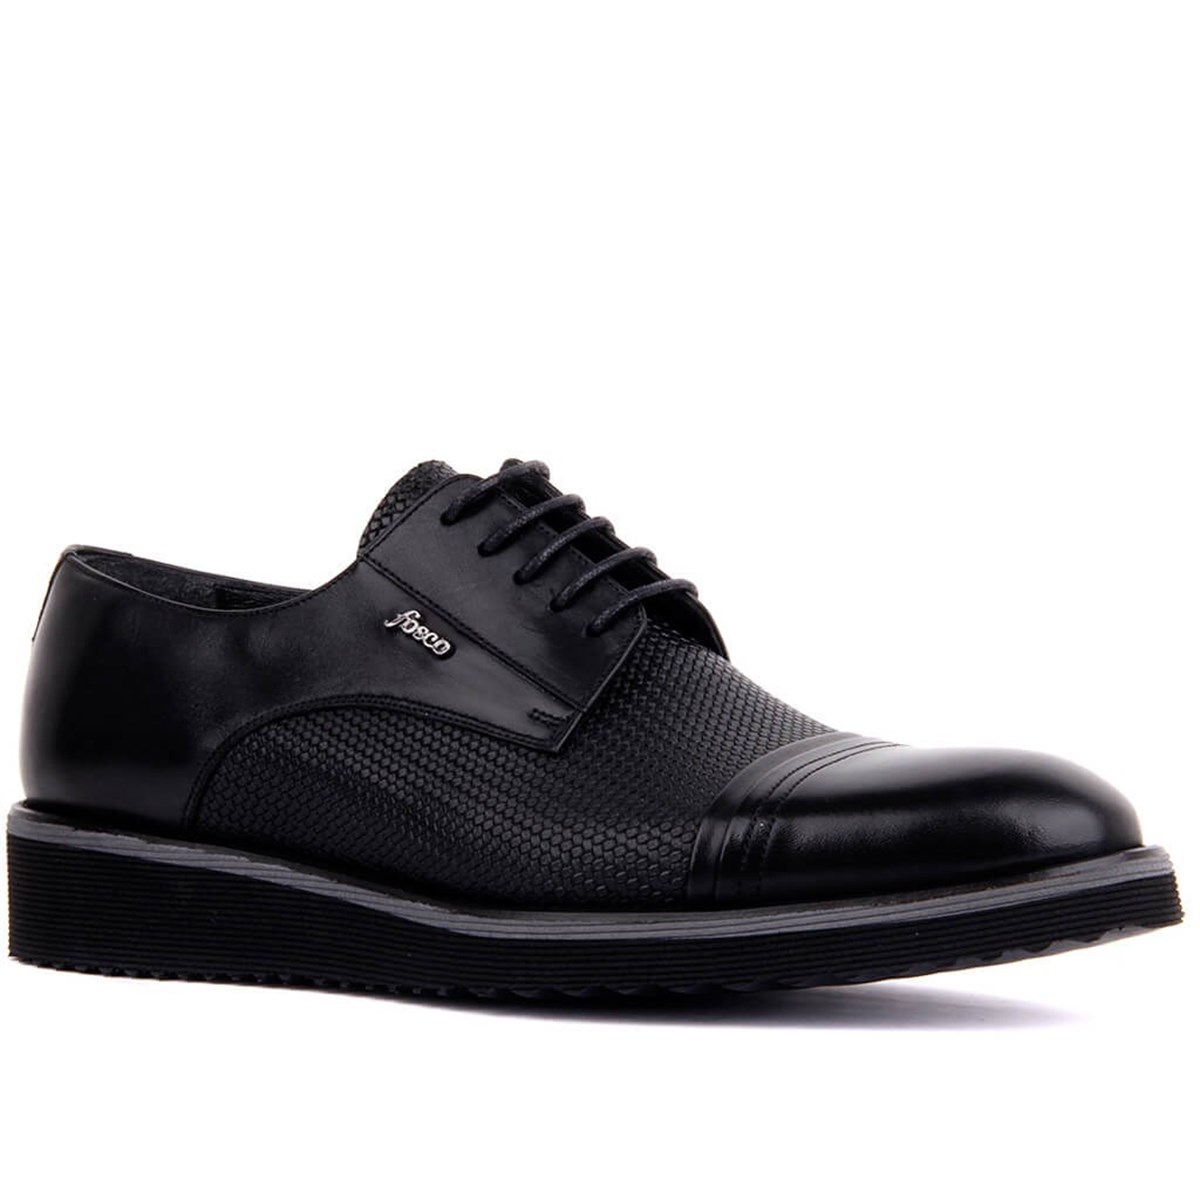 Hakiki Deri Günlük Erkek Ayakkabı, Renk: Siyah, Beden: 39